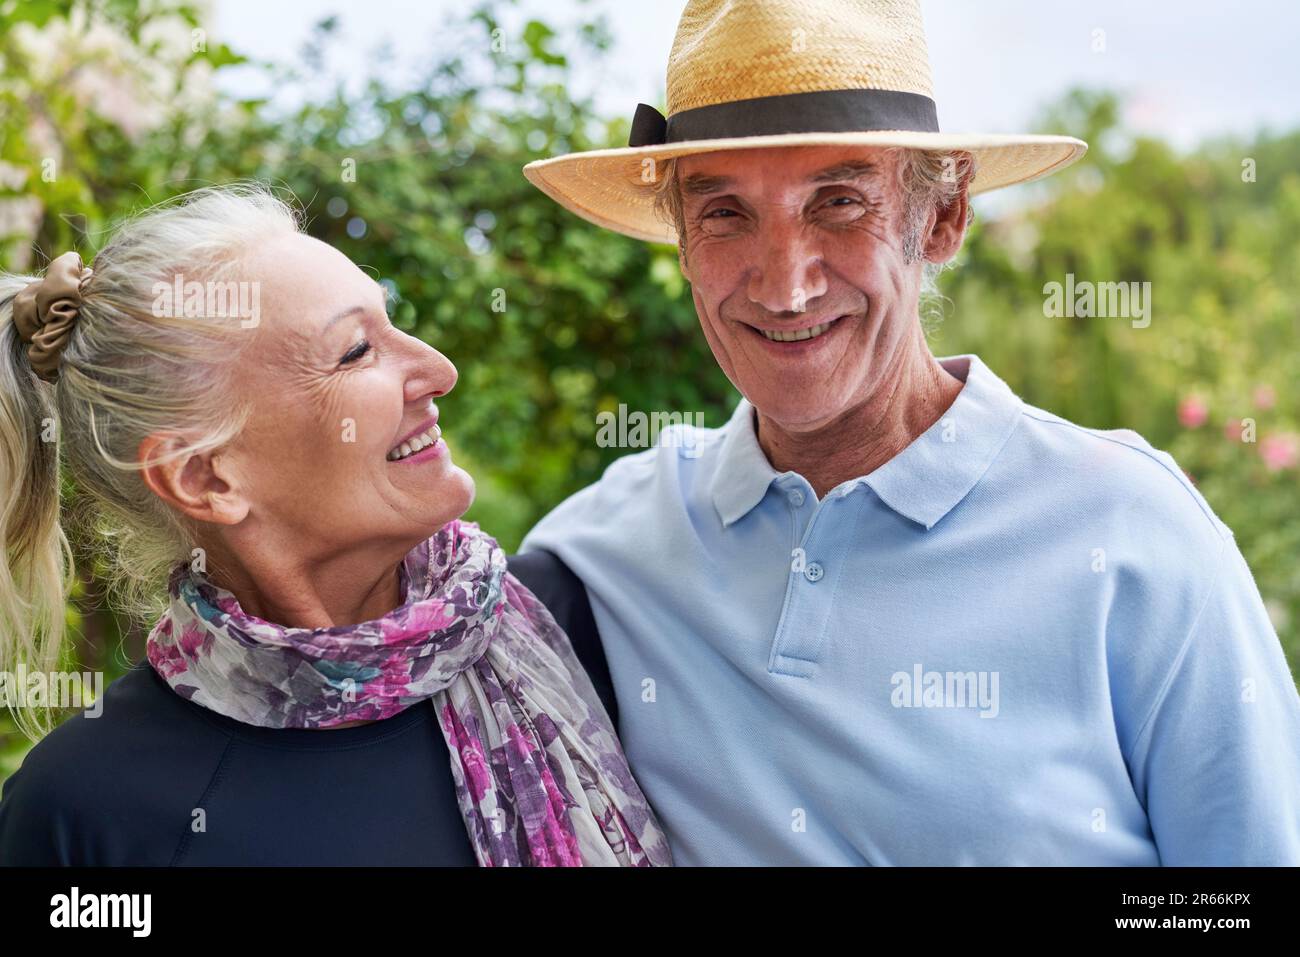 Portrait happy senior couple outdoors Stock Photo